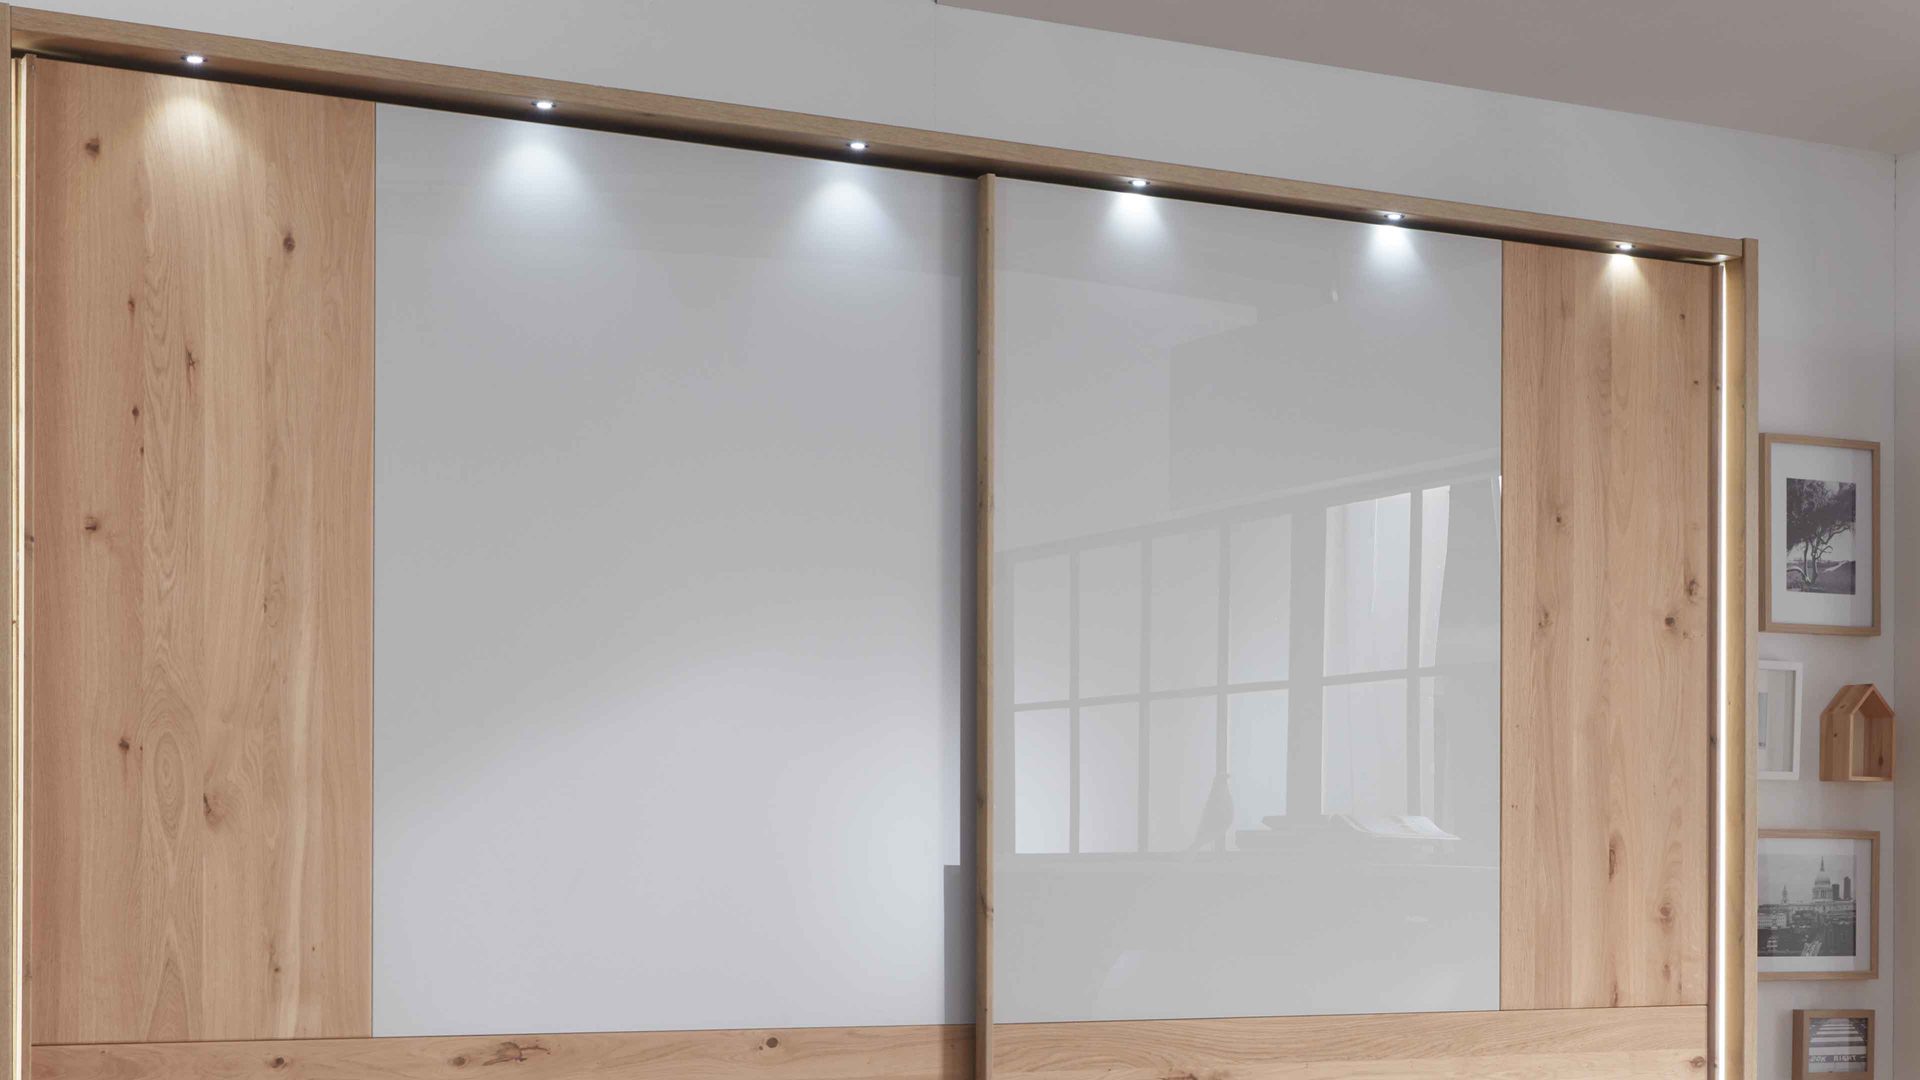 Möbelbeleuchtung Wiemann | oeseder aus Kunststoff in Weiß WIEMANN Modena Plus - LED-Beleuchtung umlaufend, für ca. 300 cm Breite